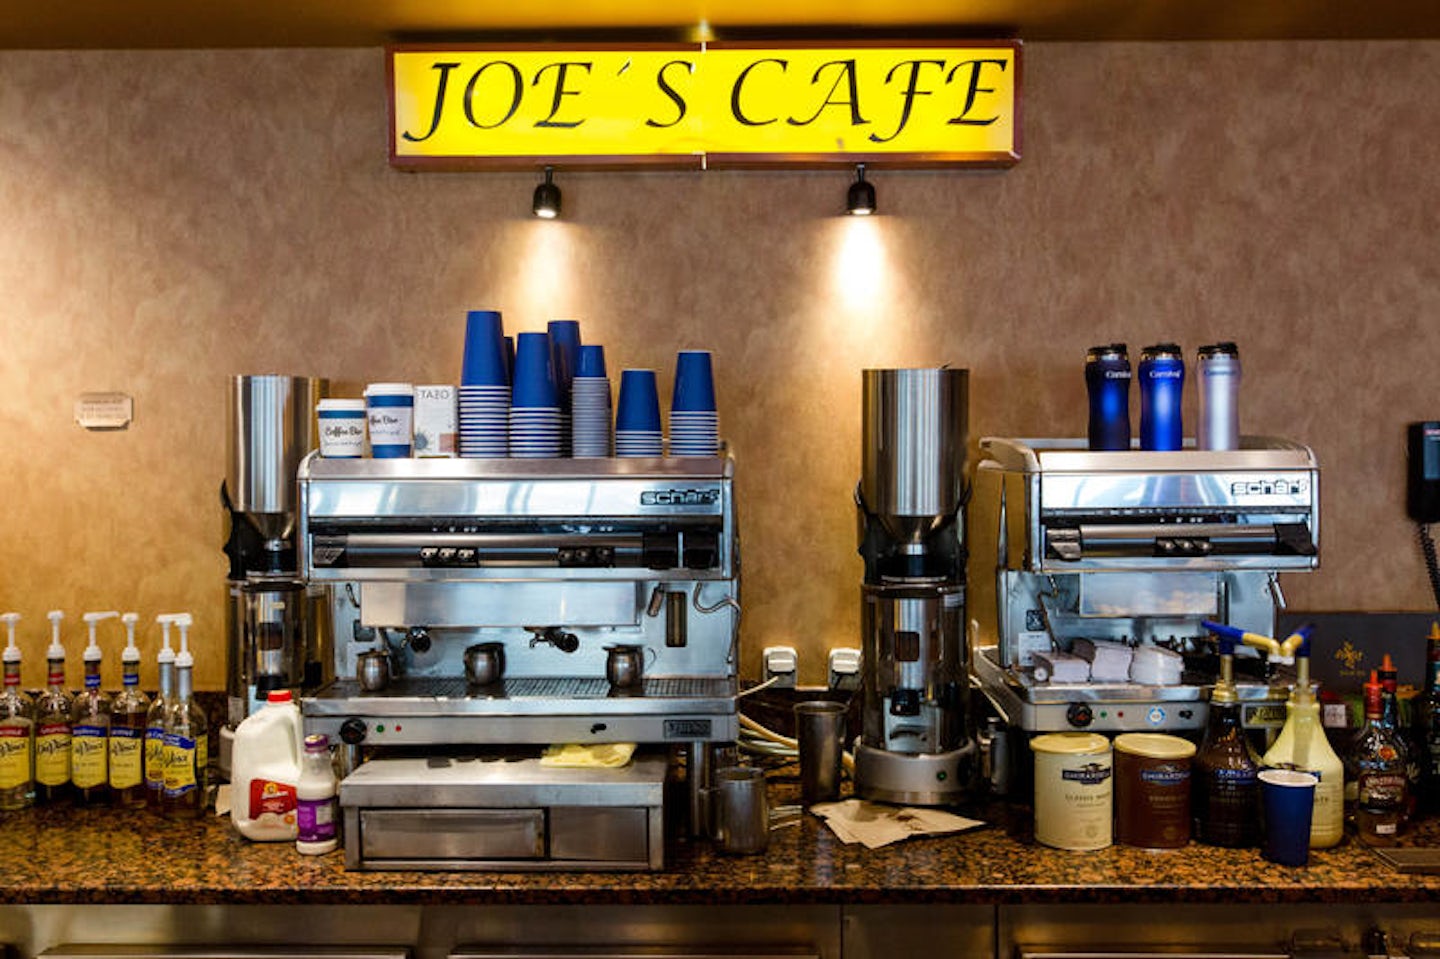 Joe's Cafe on Carnival Sensation